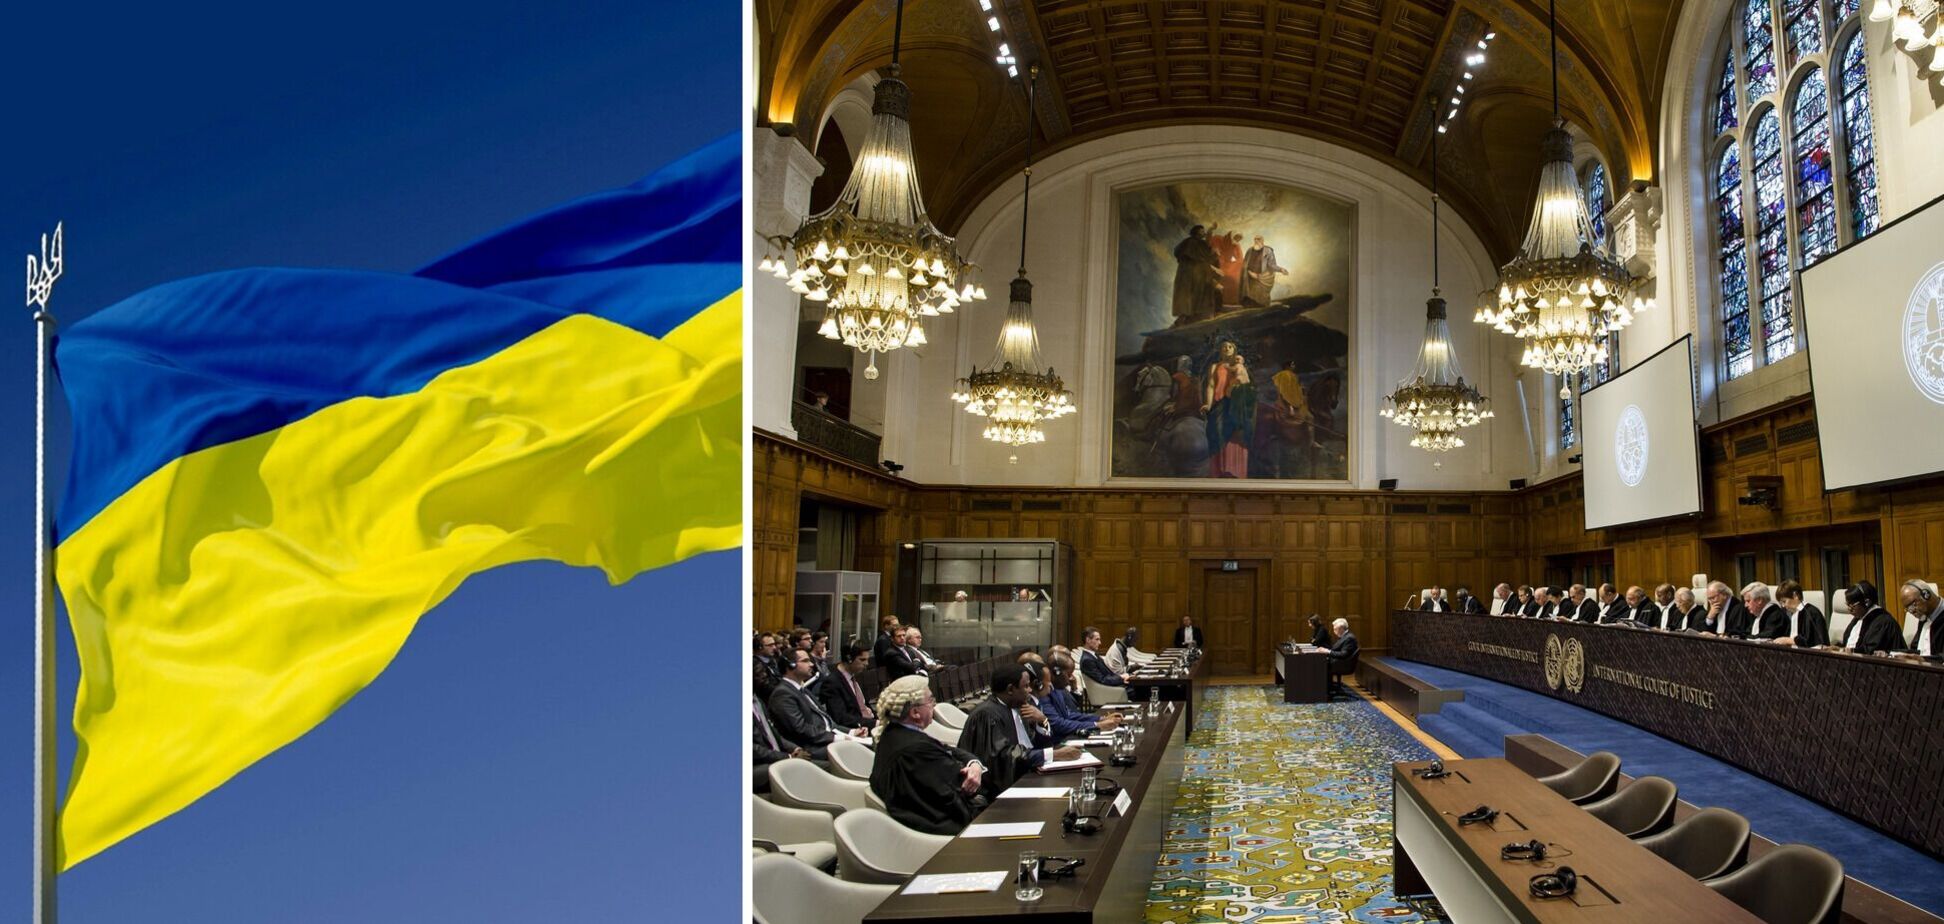 8 перемог України над Росією на юридичному фронті